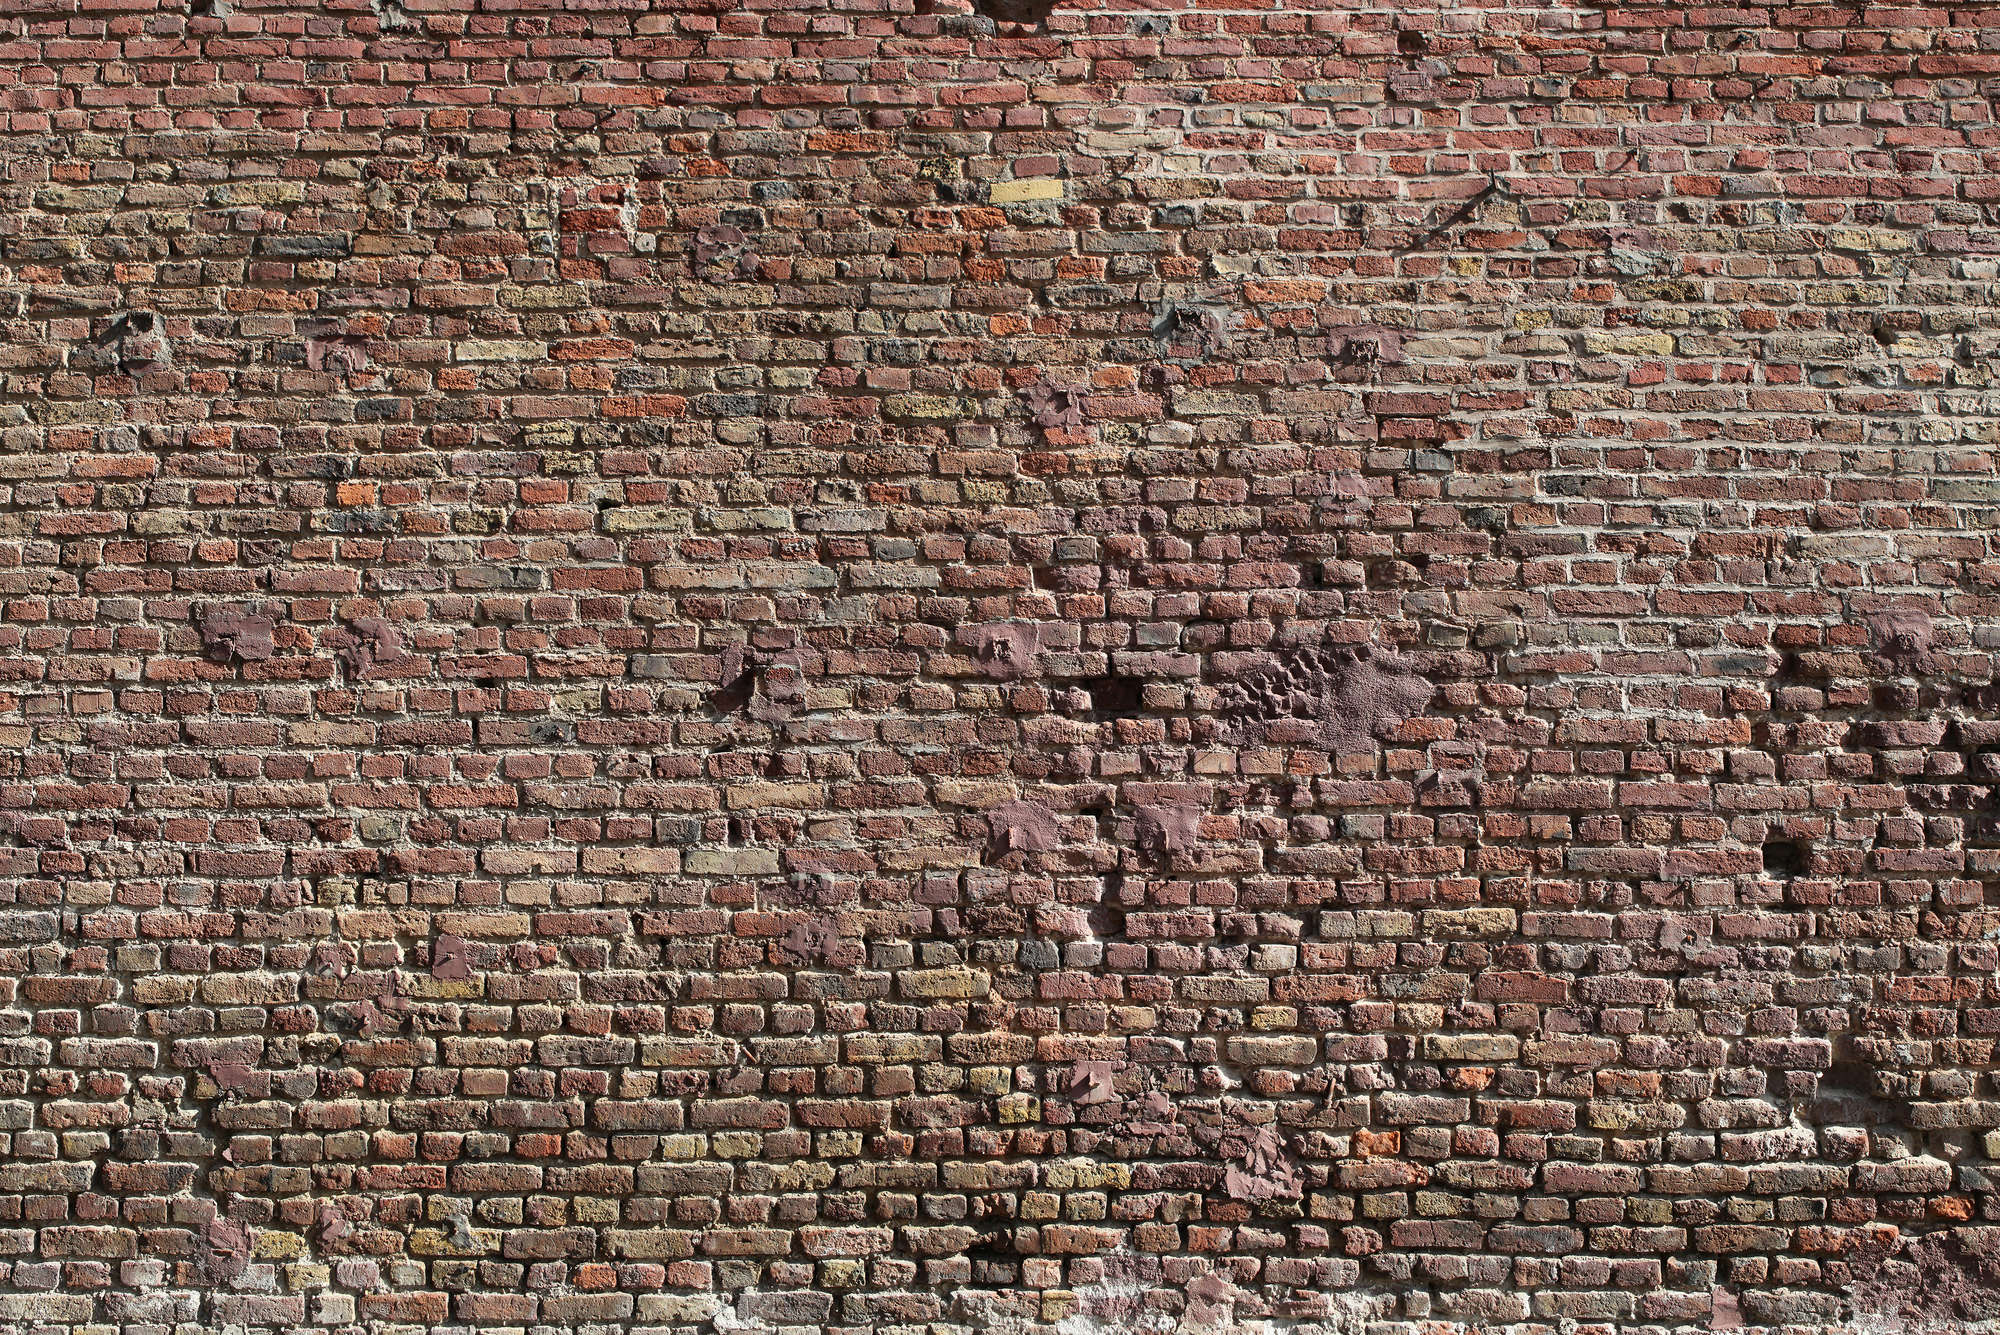             Mural de pared de ladrillo rústico, ladrillos rojos
        